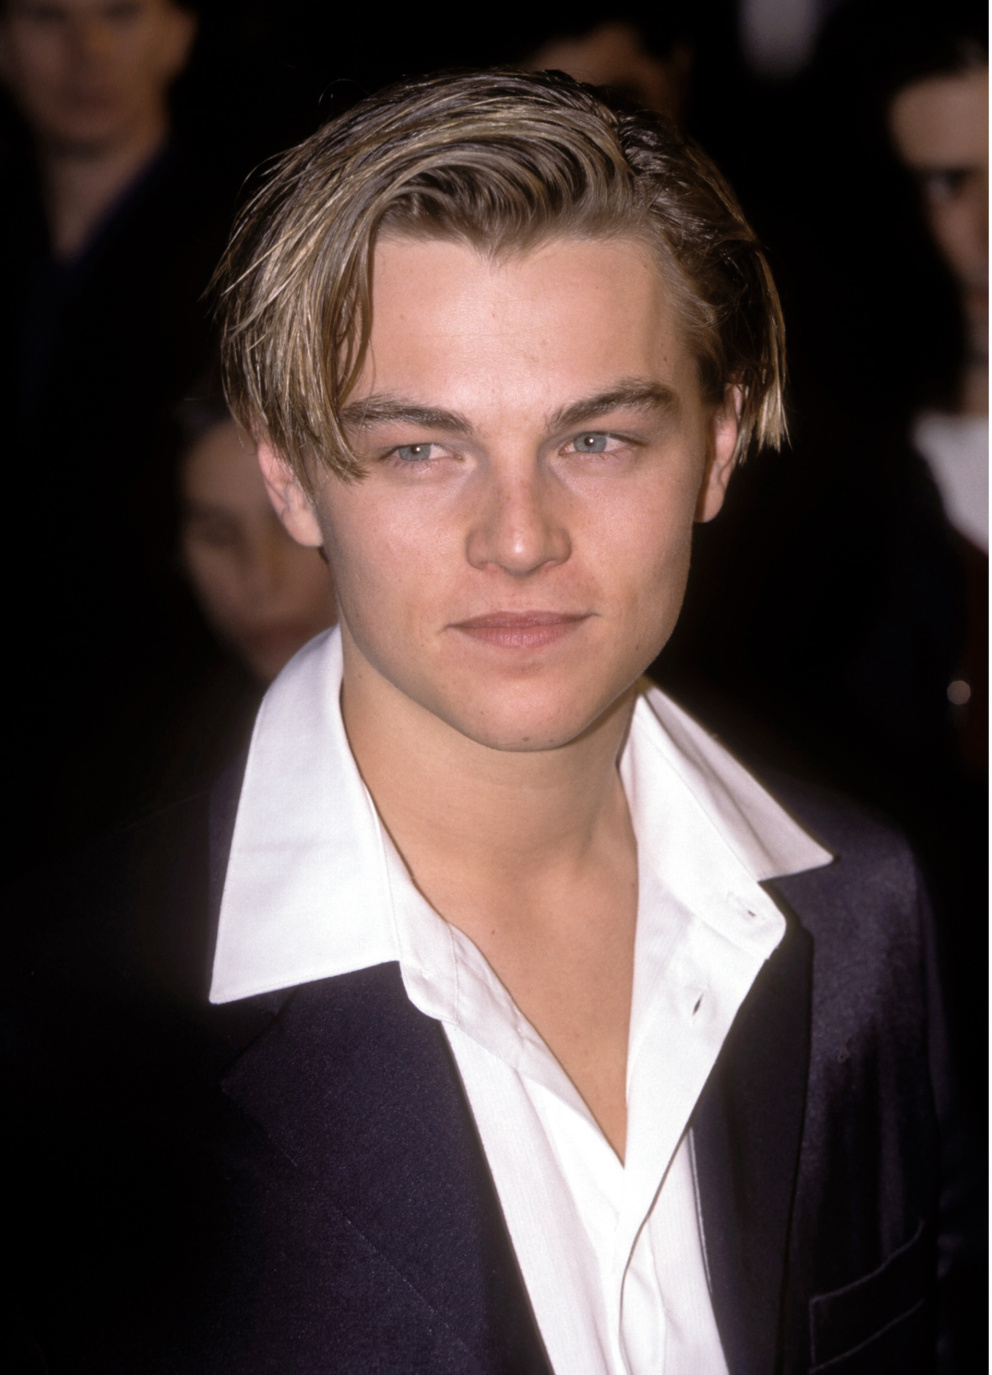 Leonardo DiCaprio v 90. letech

Podobně to měl i Pittův herecký kolega Leonardo DiCaprio. Jeho kariéra odstartovala raketovou rychlostí v 90. letech, když byl teprve teenager, a to díky hlavním rolím&nbsp;ve filmech&nbsp;Romeo a Julie a samozřejmě Titanic.
